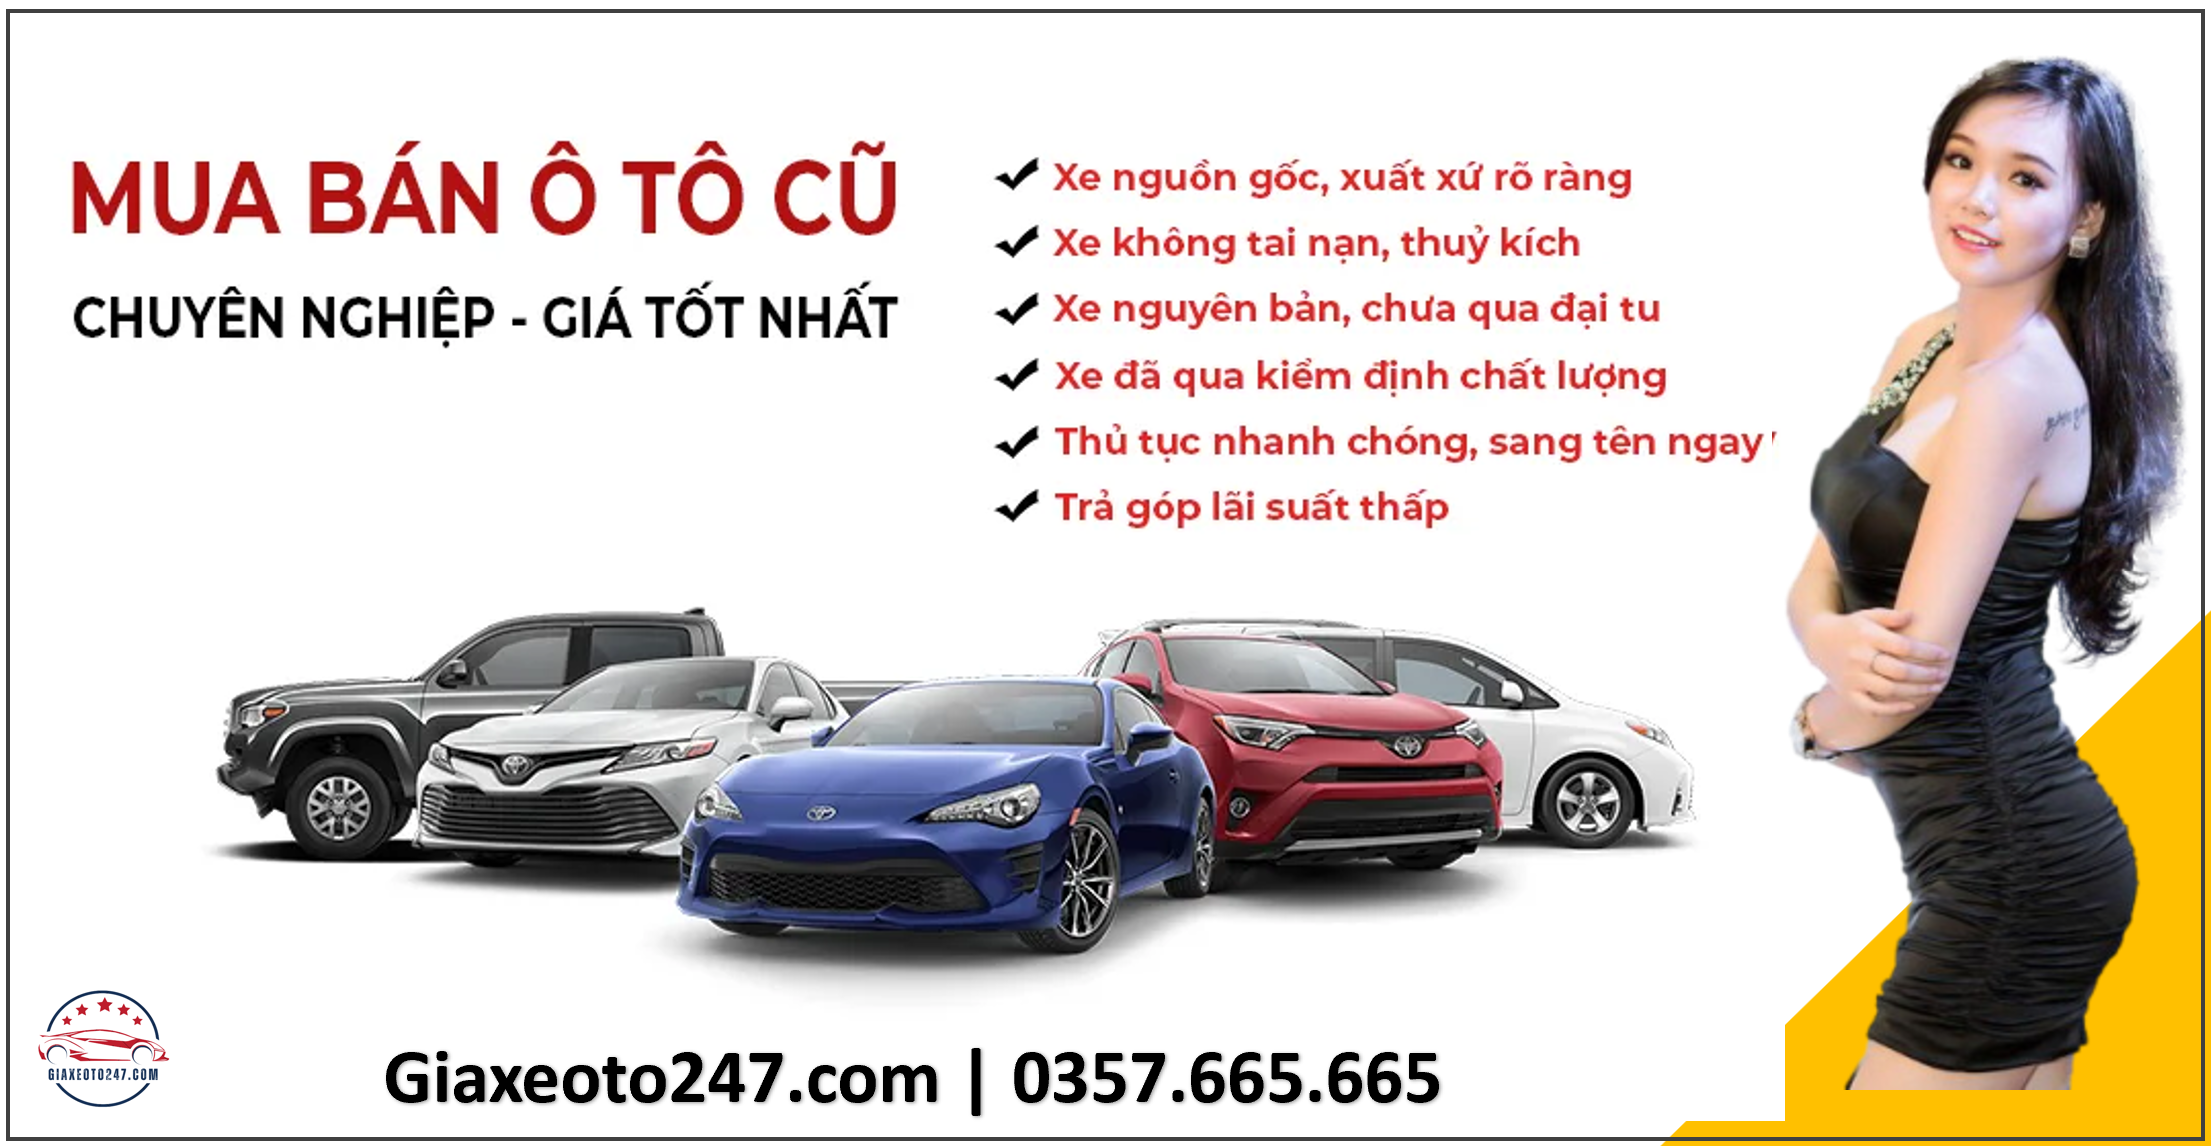 Dich vu thu mua o to cu da qua su dung mua ban toan quoc 3 - Xe limousine Hà Nội Ninh Bình | Top 15 nhà xe đưa đón tại nhà